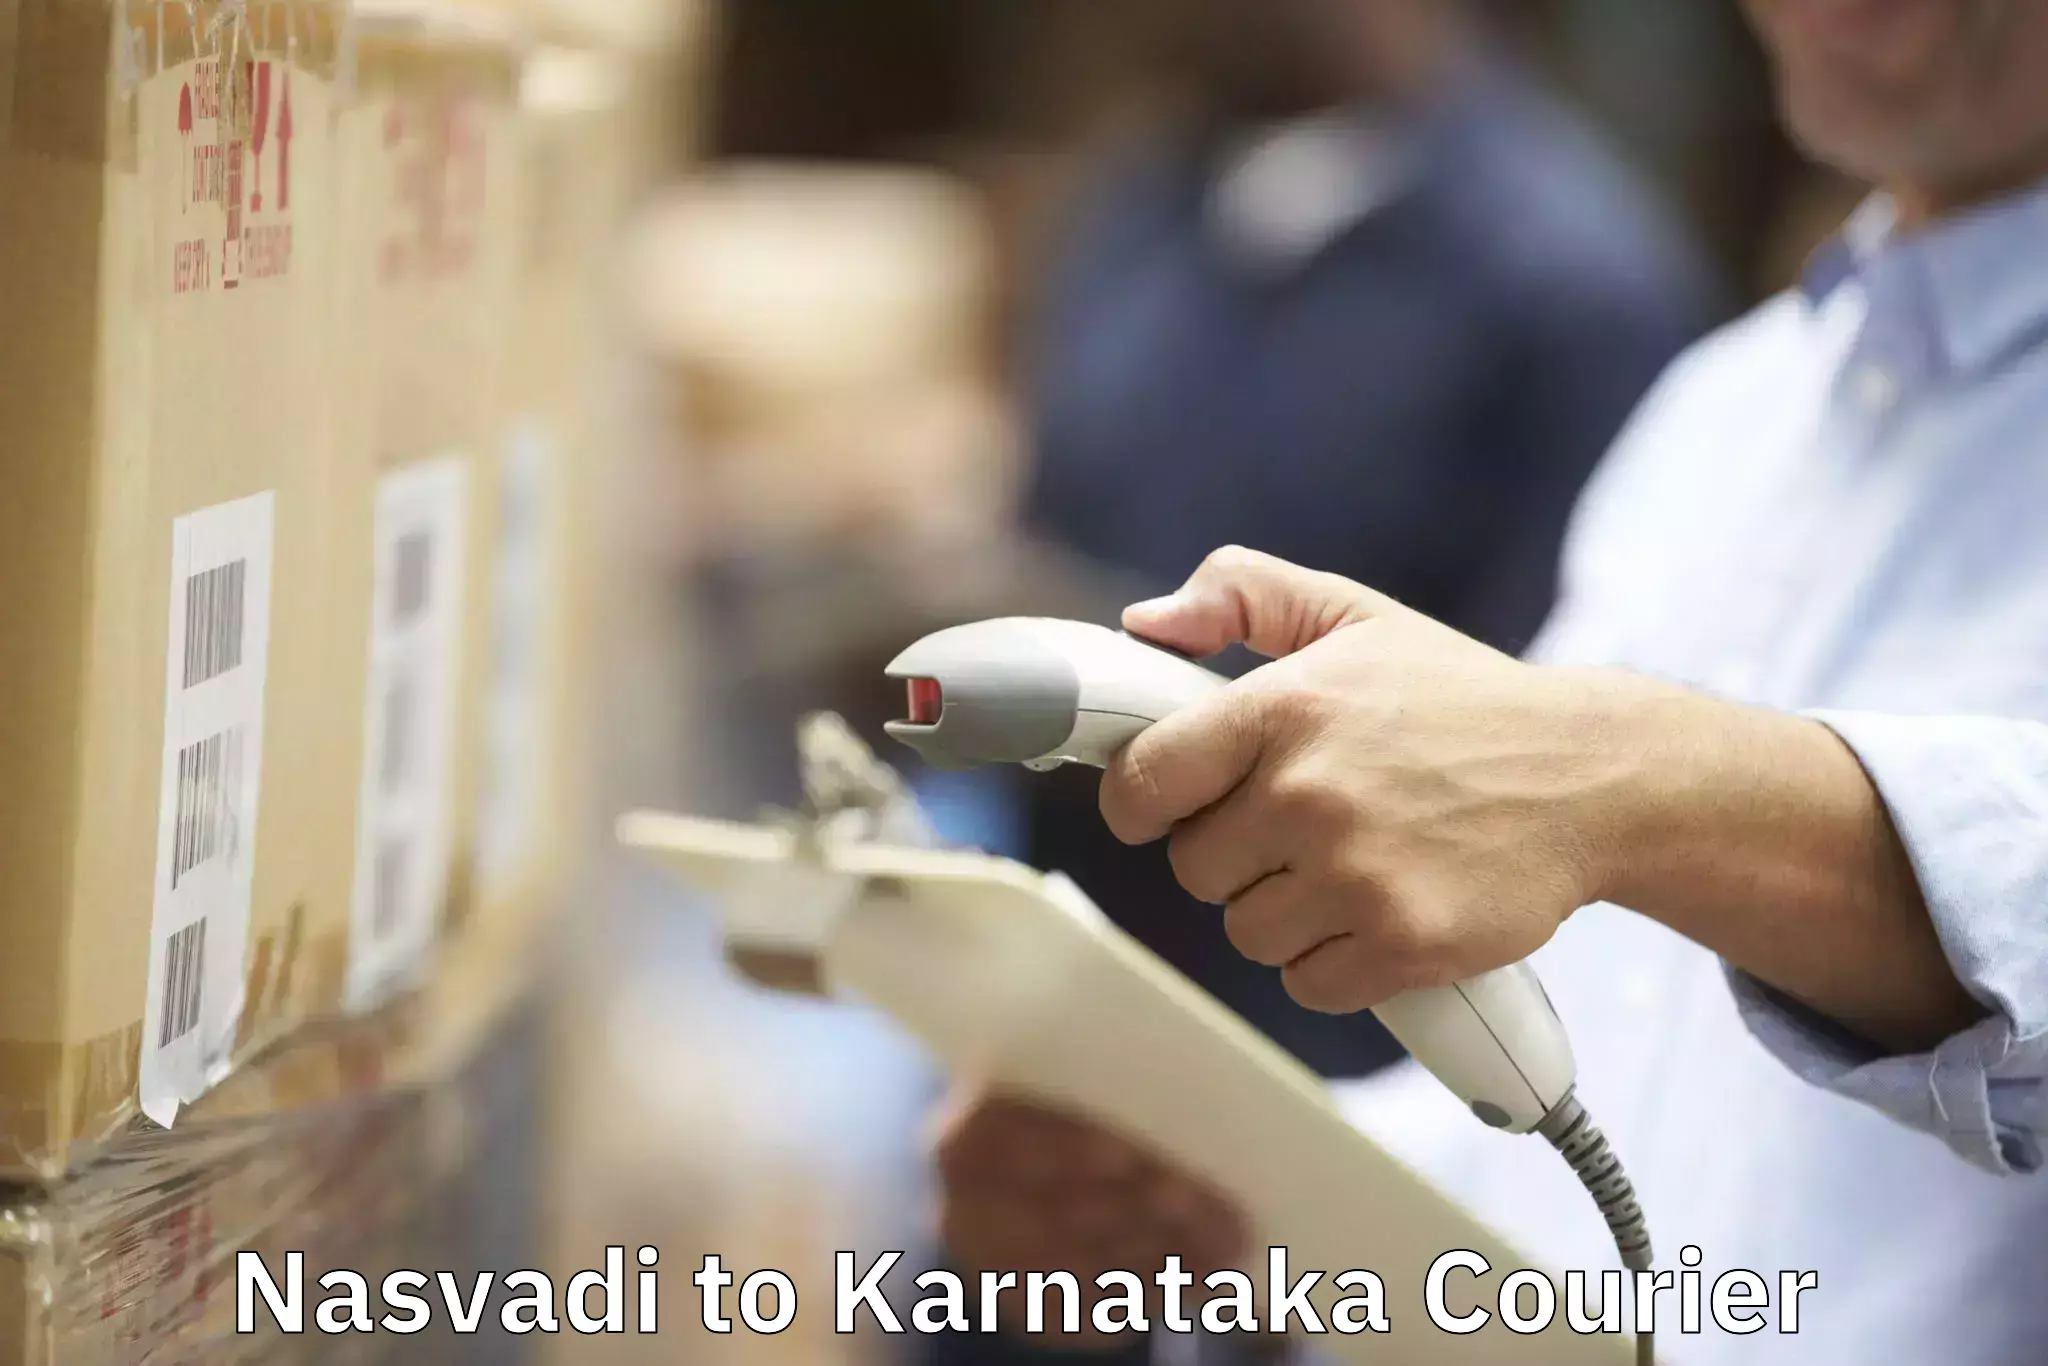 Nationwide moving services Nasvadi to Karnataka